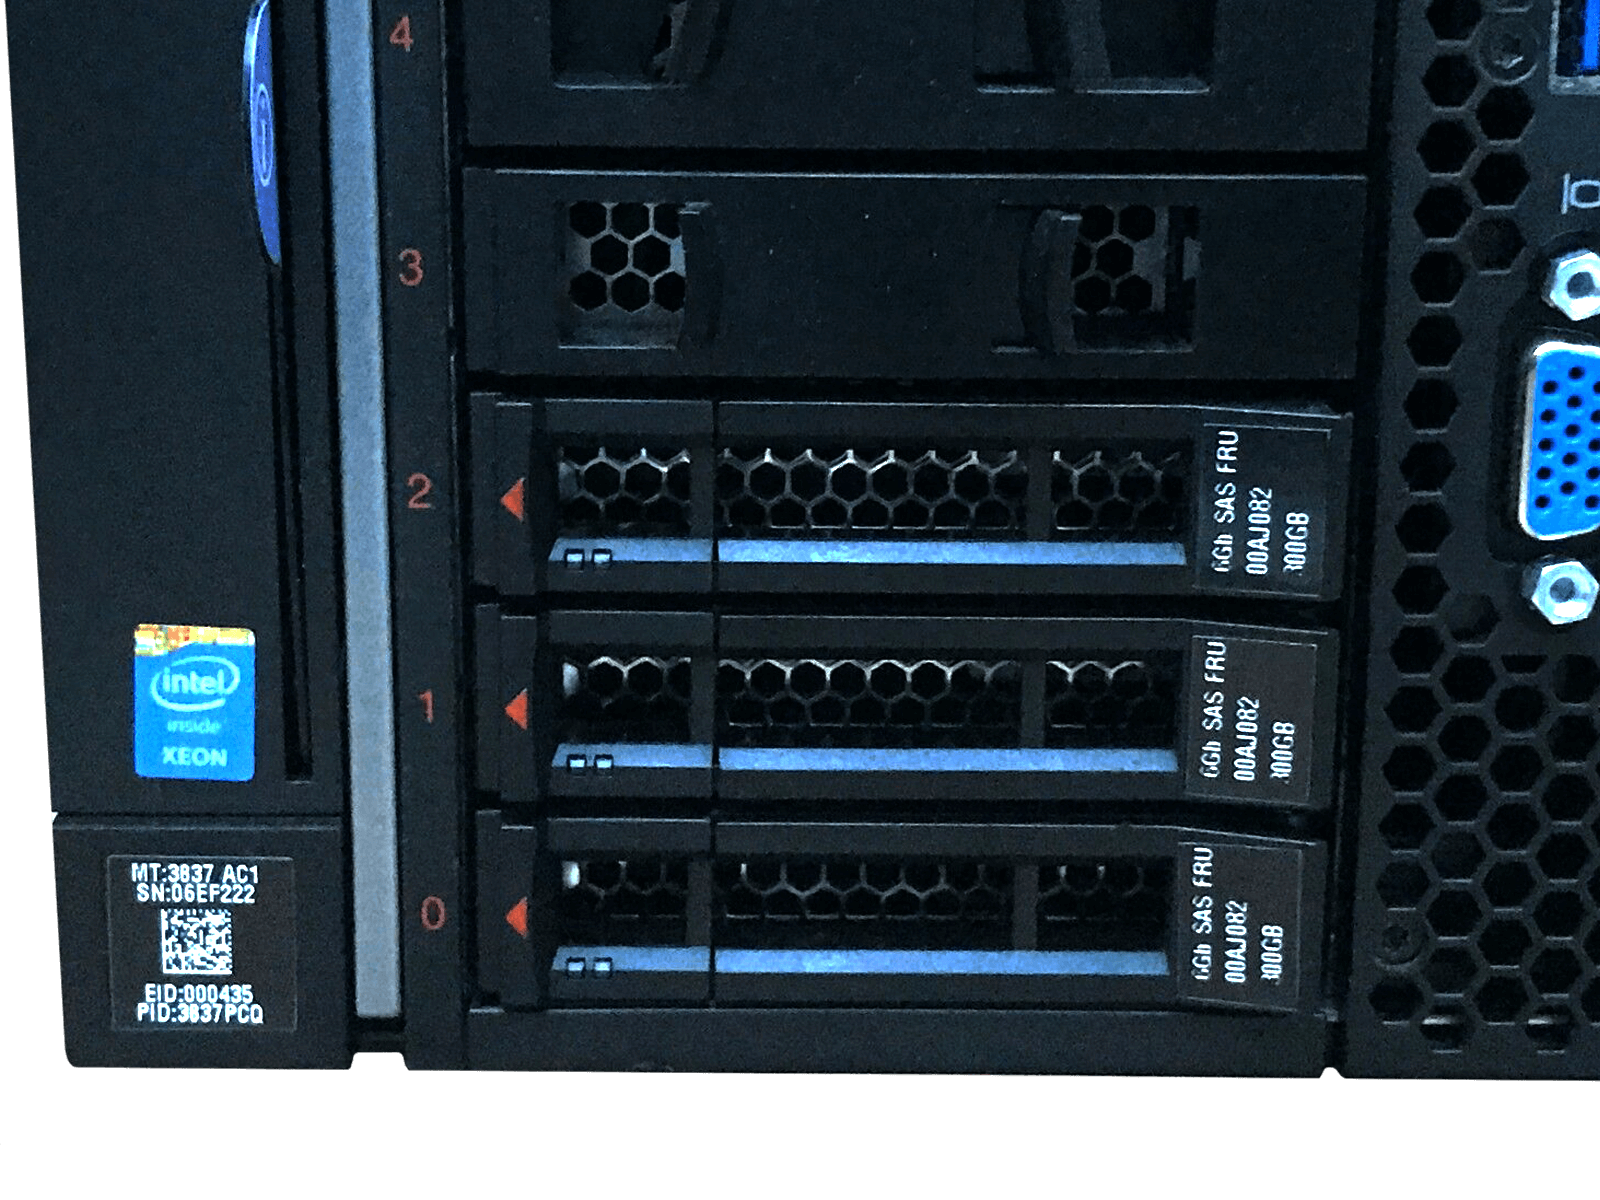 IBM x3850 X6 Server 4x Xeon E7-8870 v4 512GB DDR4 RAM 3x 300GB 10K 4x 900W PSU